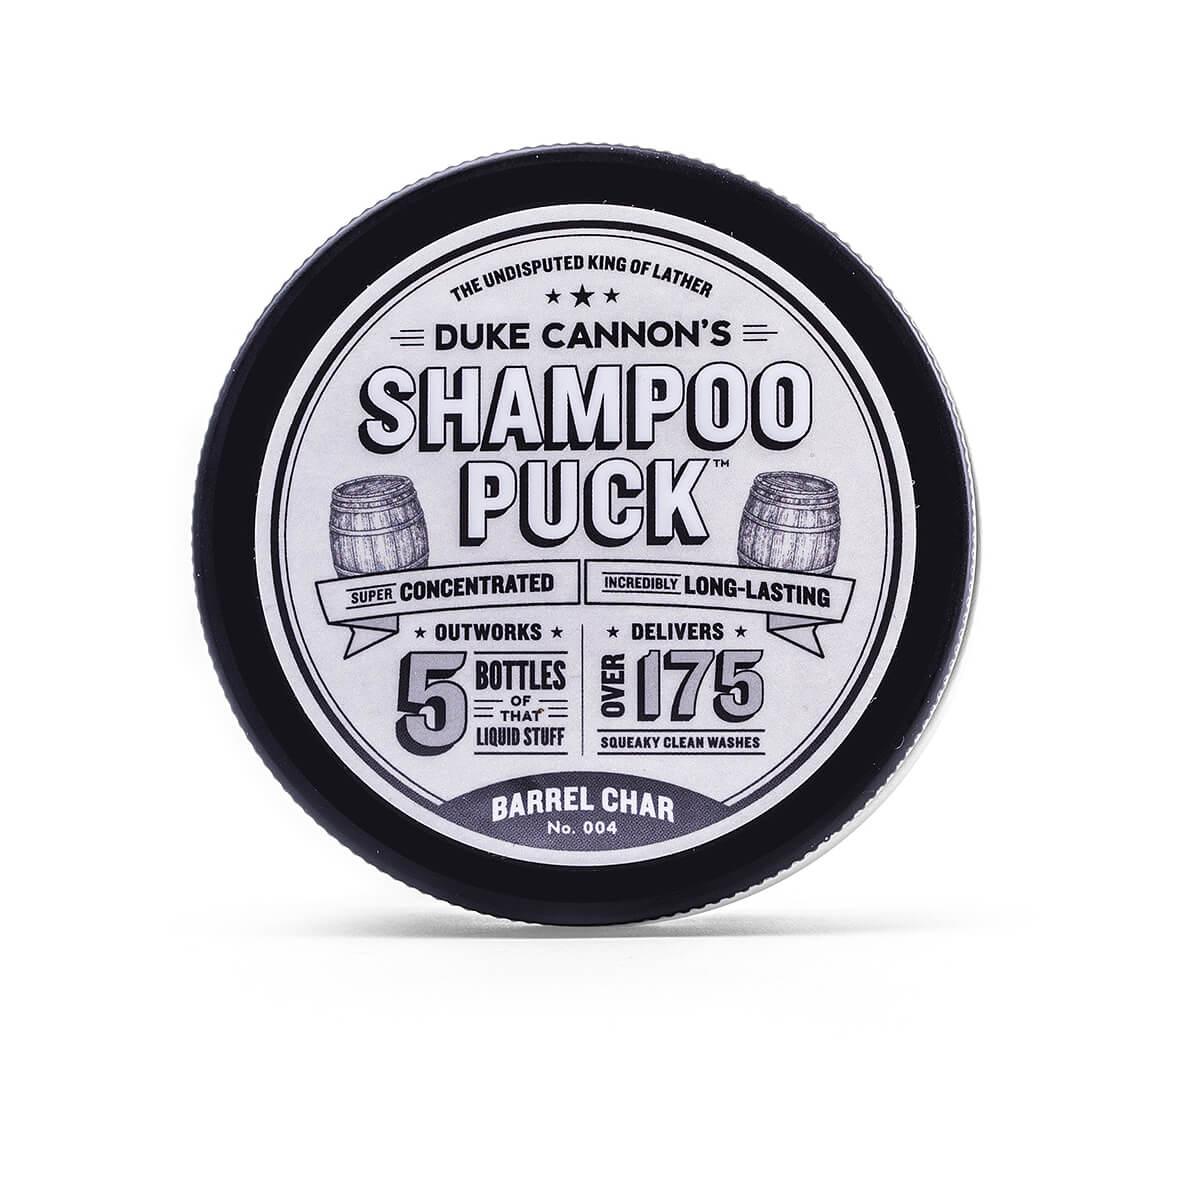  Barrel Char Shampoo Puck